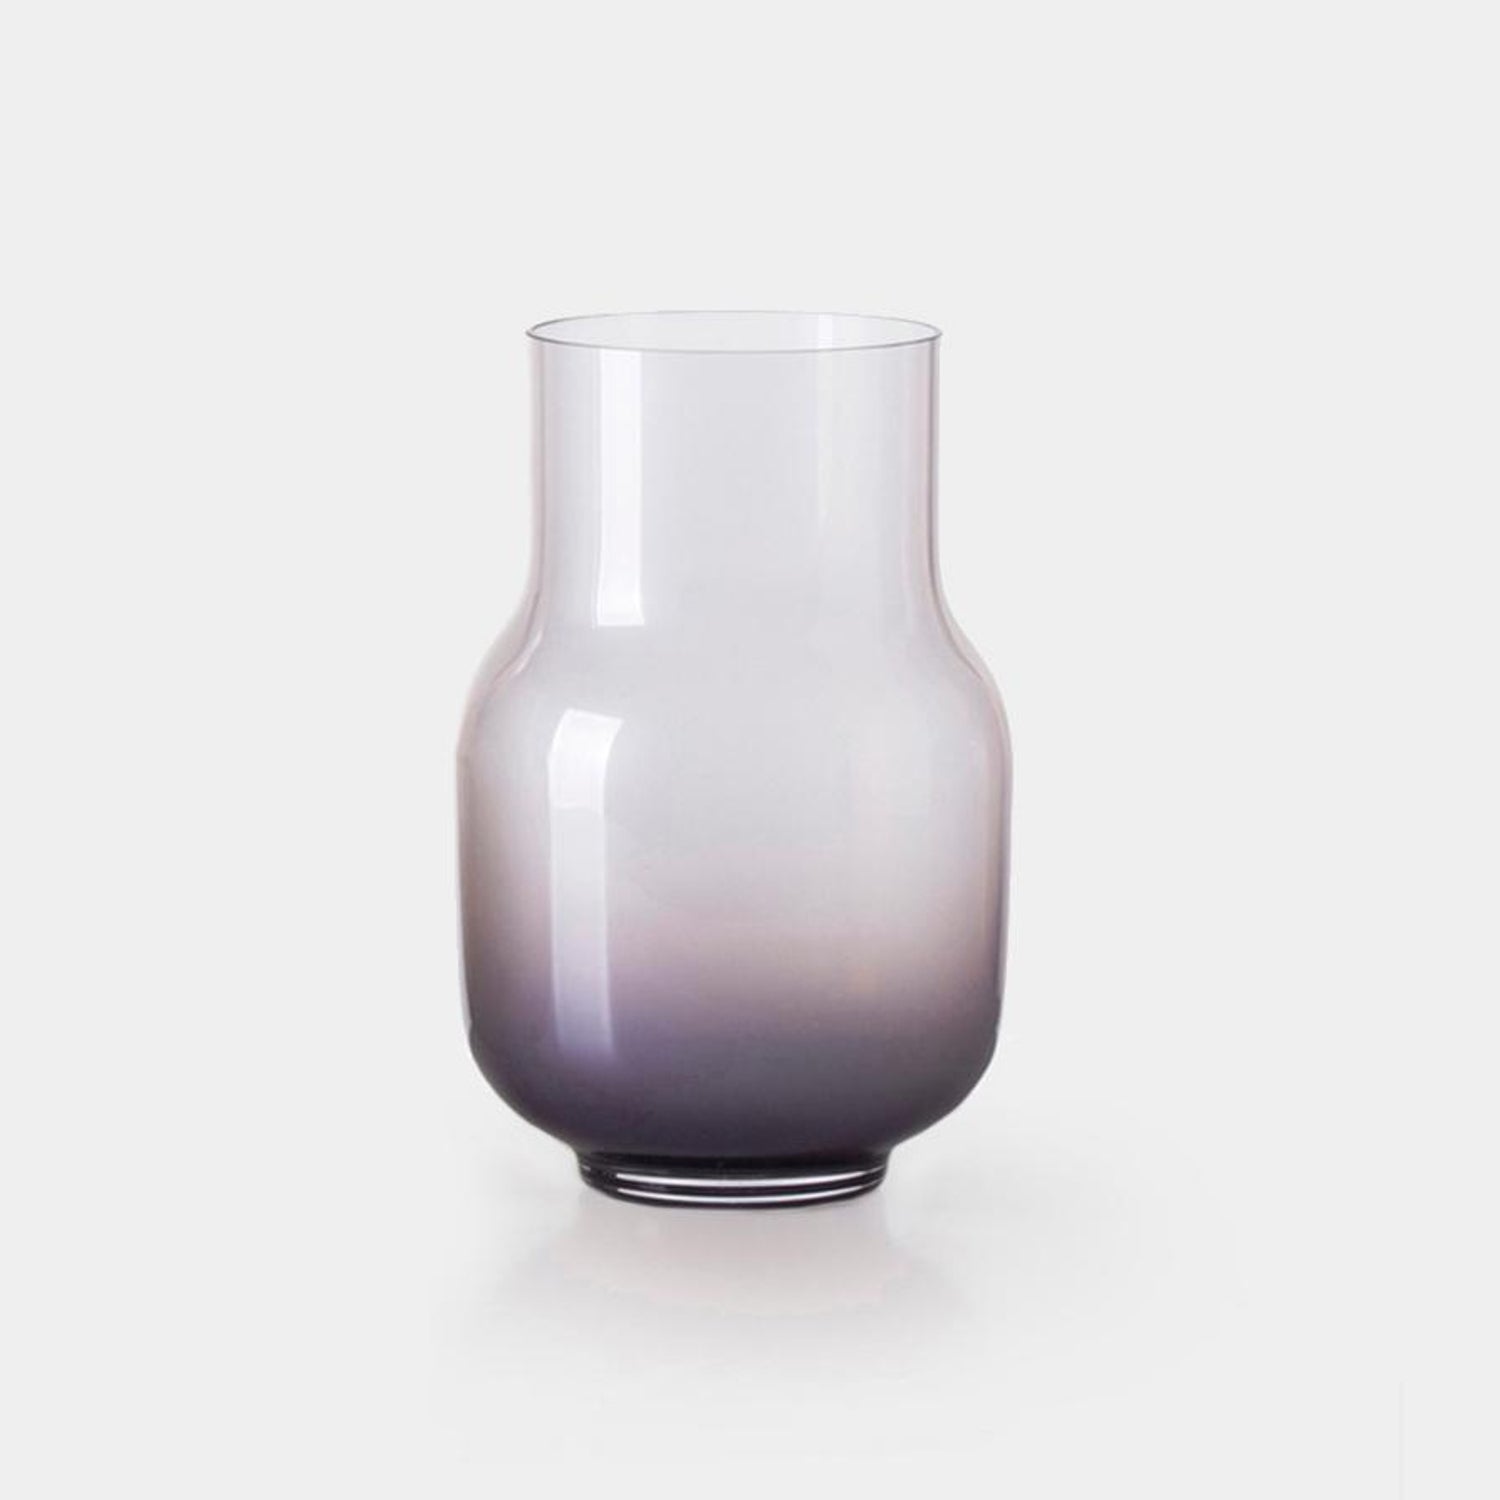 Big Vase 19 by Dechem Studio For Sale at 1stDibs